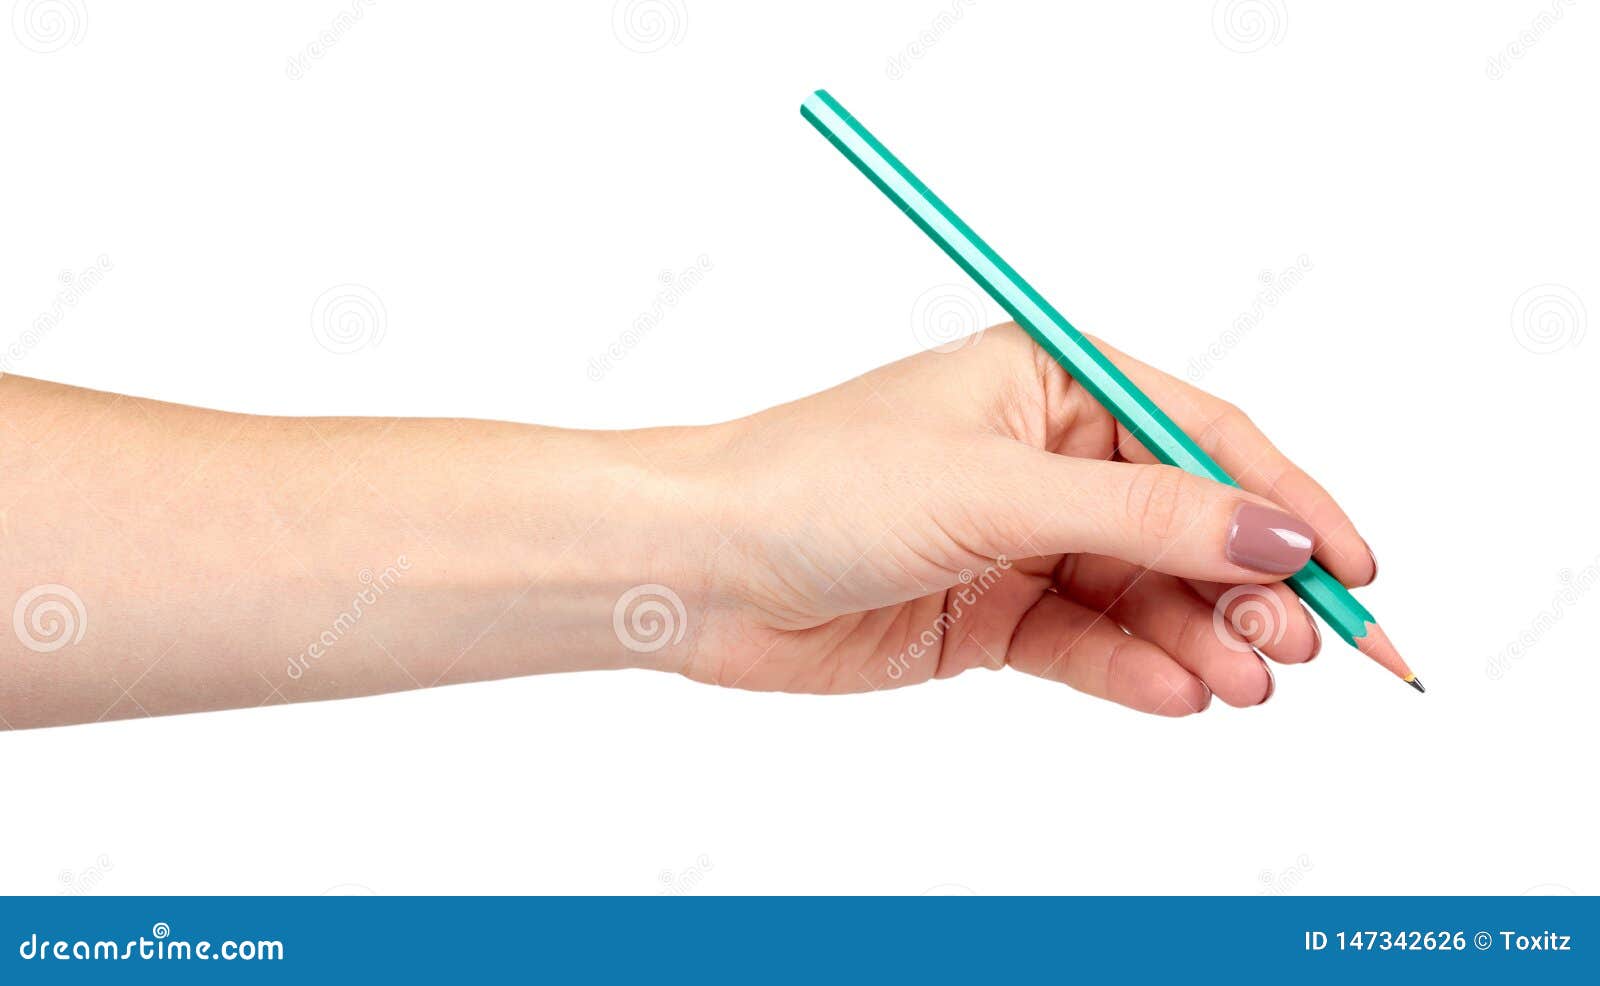 Main Avec Le Geste De Crayon, De Dessin Ou De Writinng Photo stock